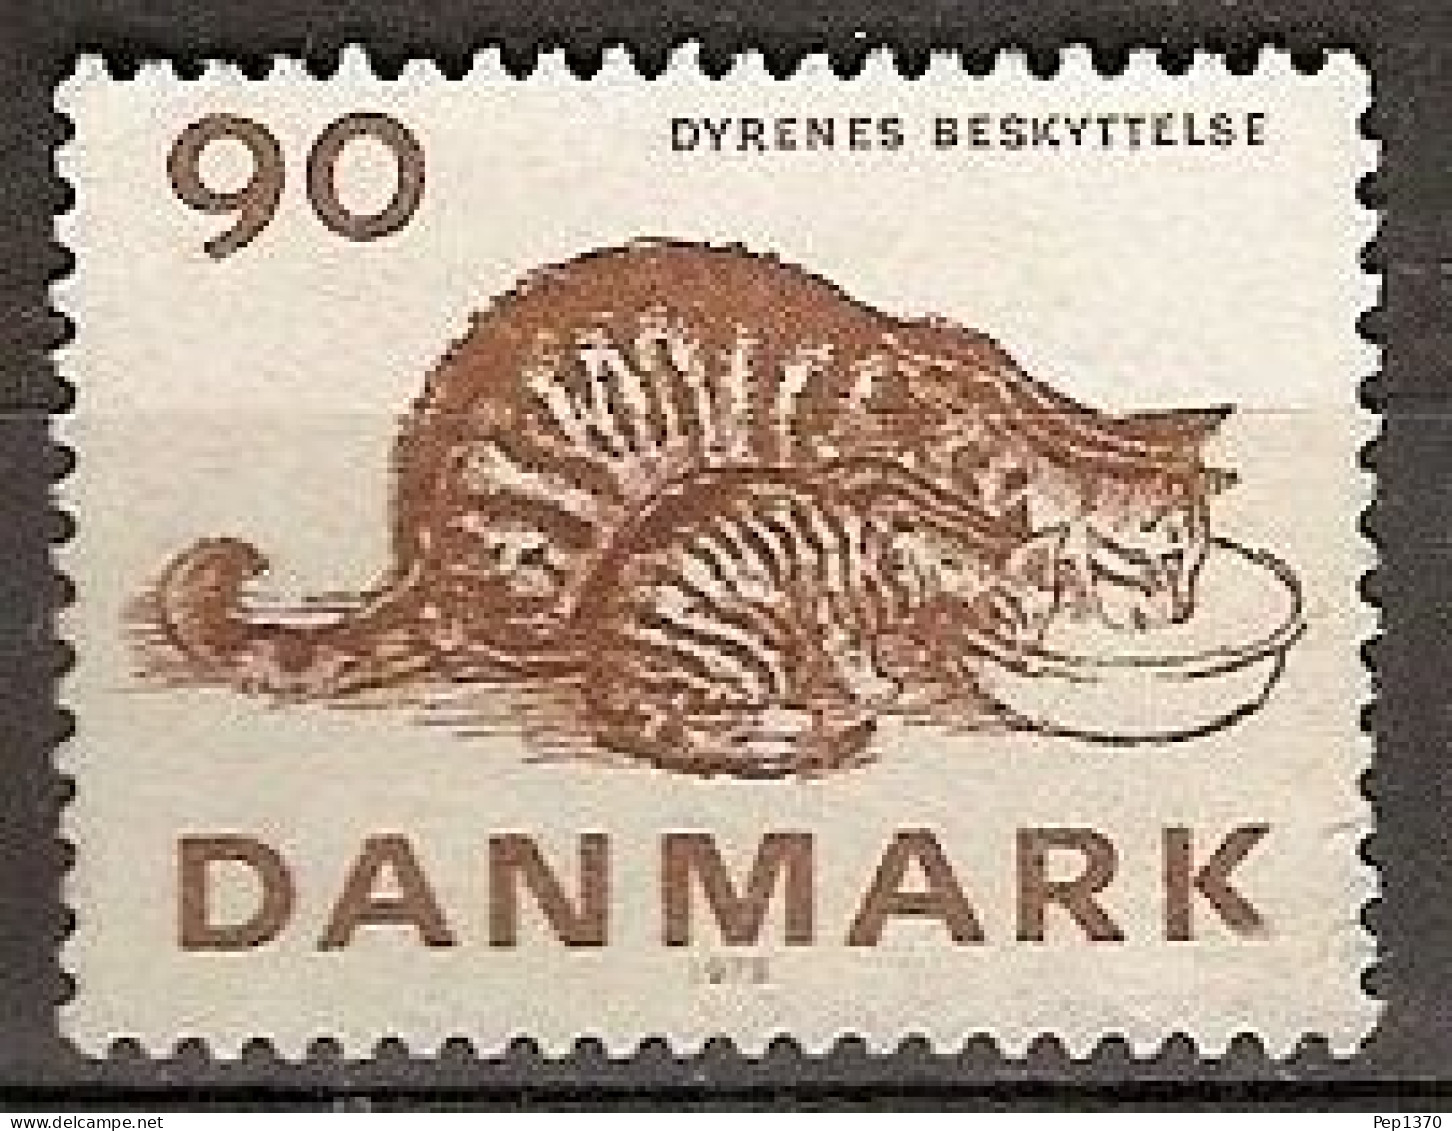 DINAMARCA 1975 - DENMARK - FAUNA GATO - YVERT 612** - Nuevos